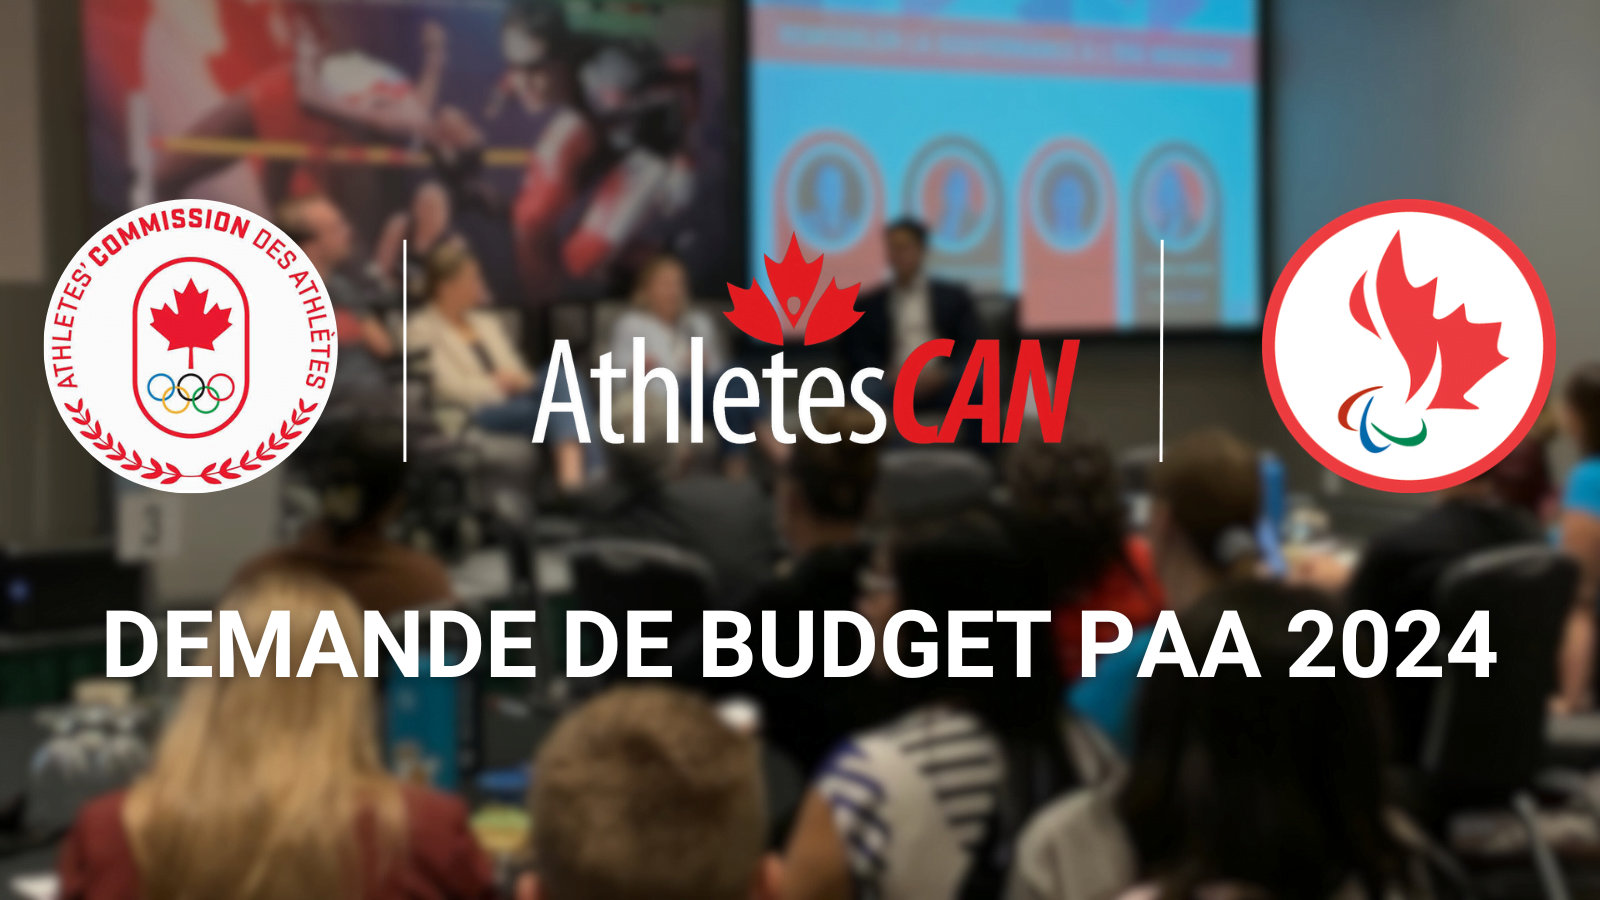 Les représentants des athlètes canadiens demandent une augmentation de 6,3 millions de dollars du financement du Programme d’aide aux athlètes dans le budget 2024